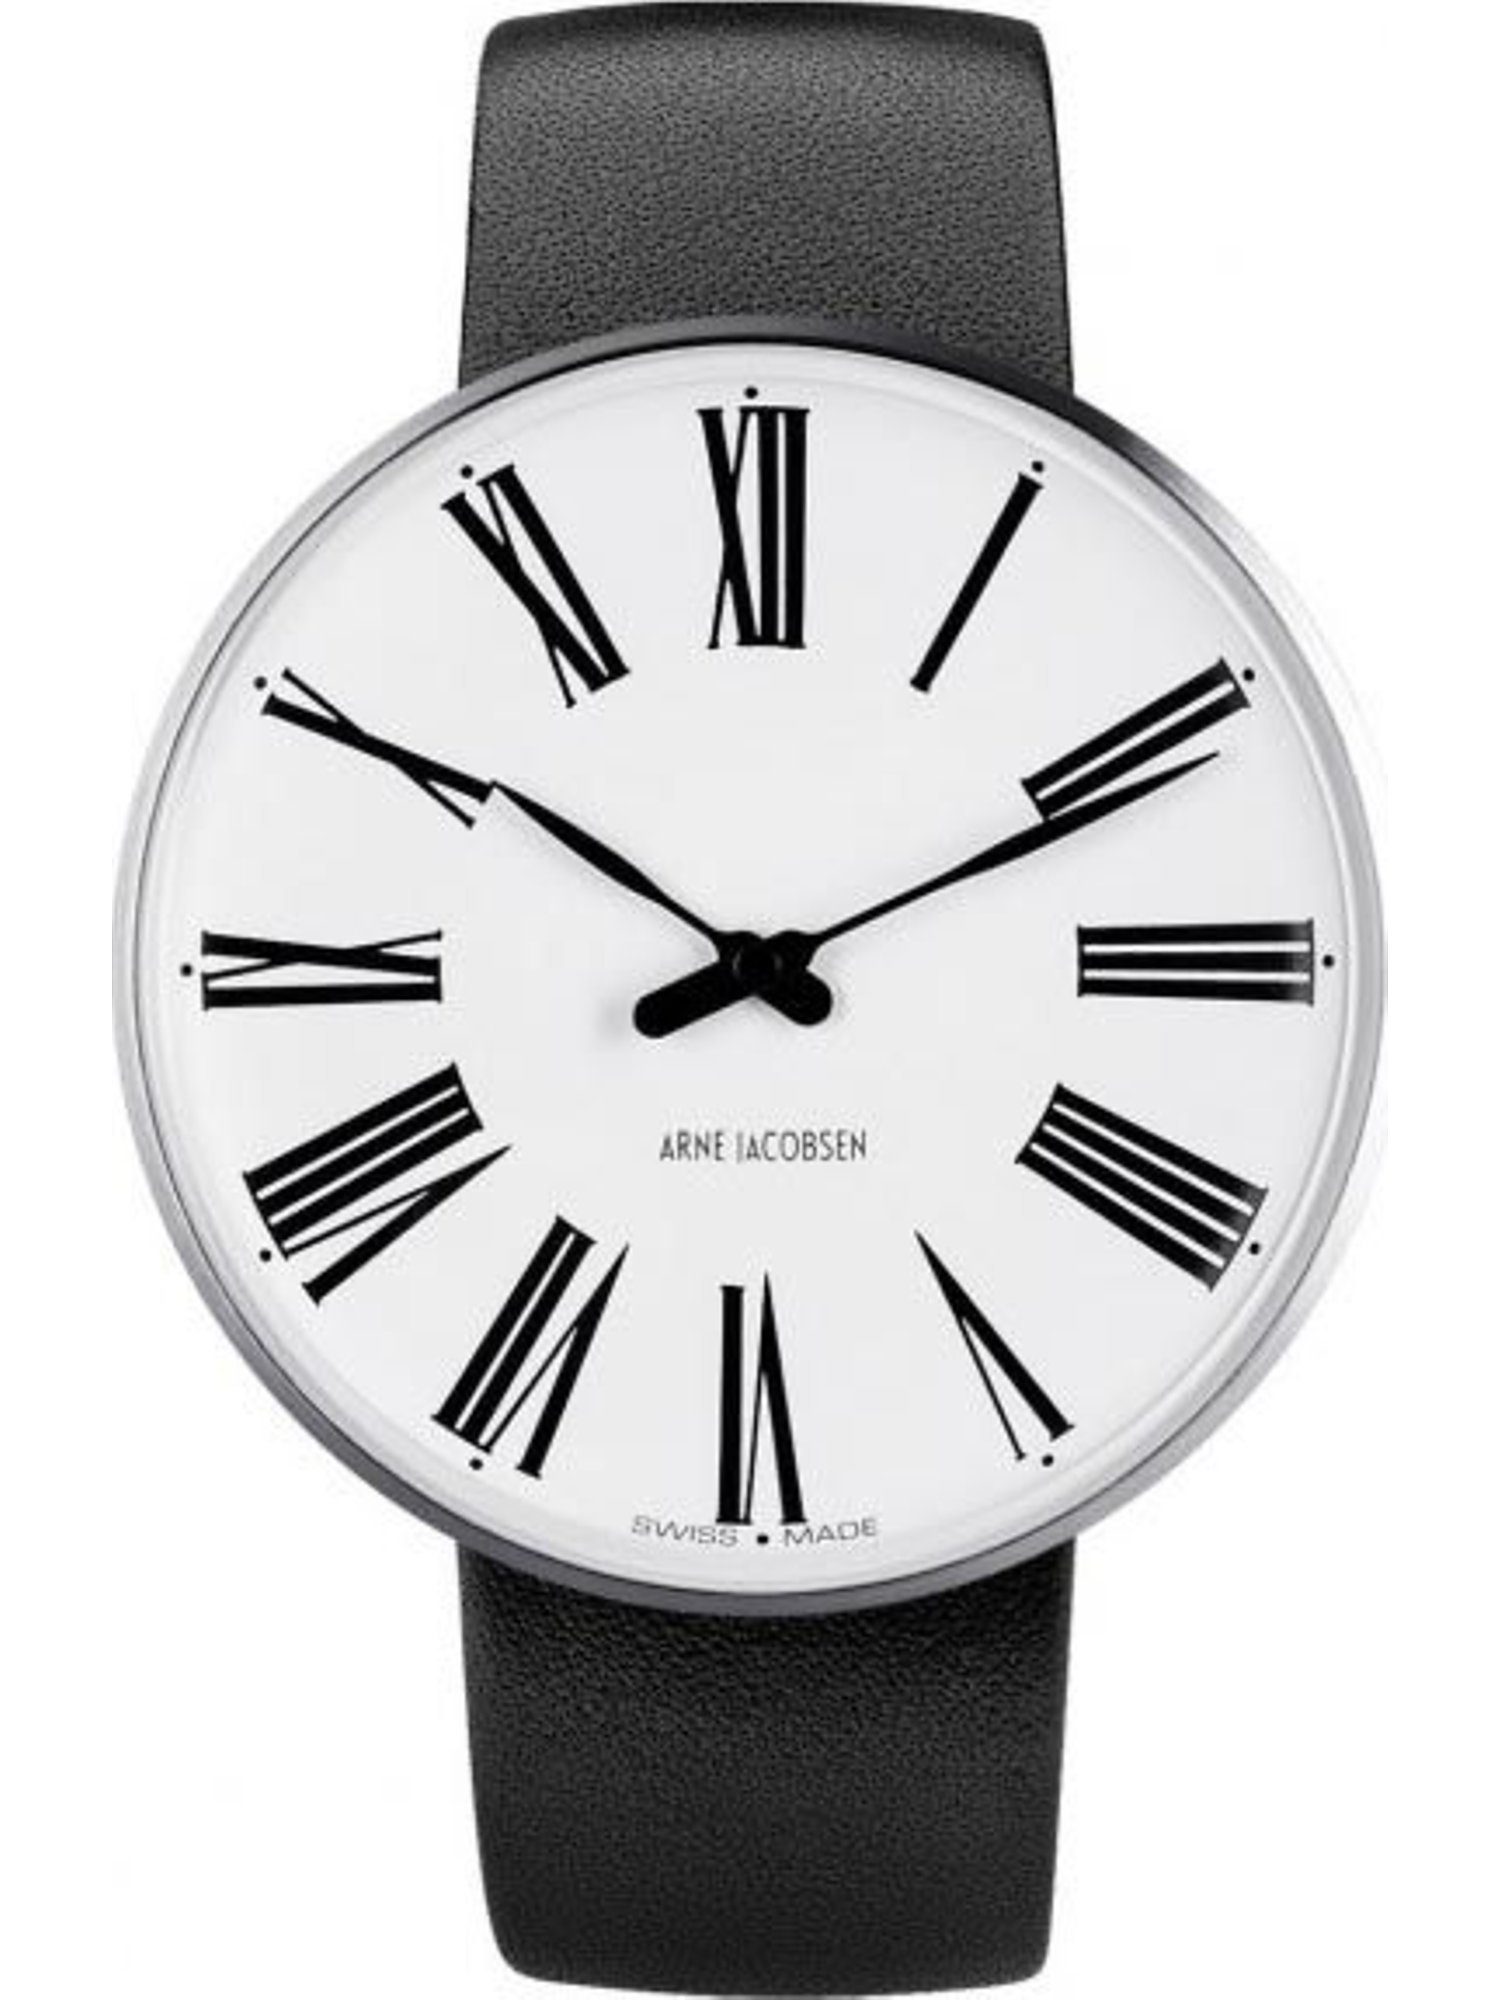 Herren Uhren Arne Jacobsen Quarzuhr Arne Jacobsen Unisex-Uhren Analog Quarz, Klassikuhr